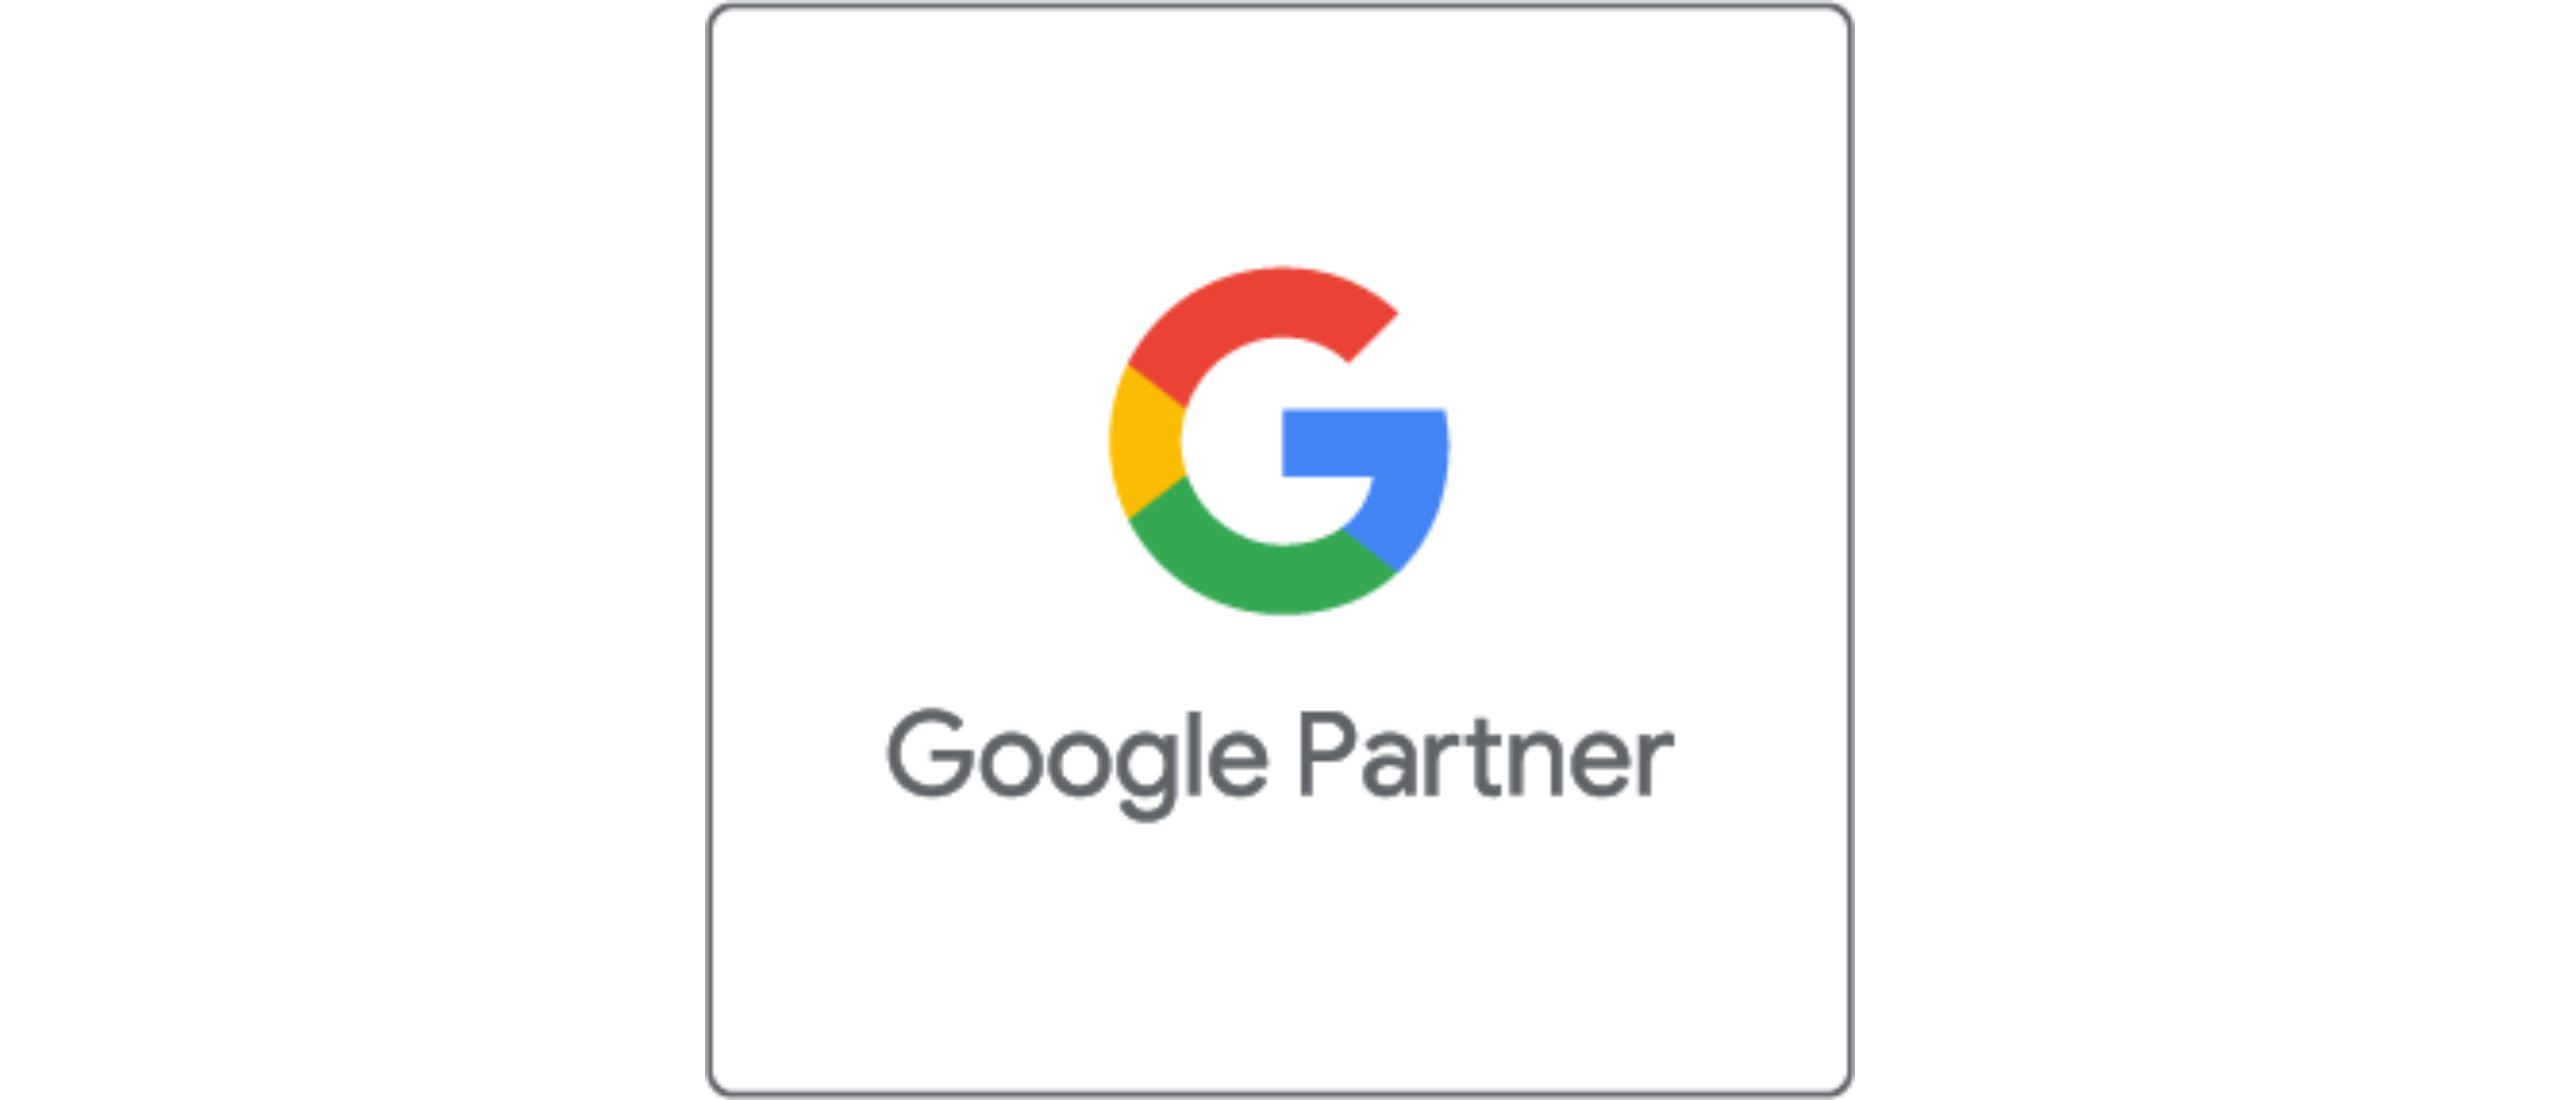 Google partner, wat houdt dit in?